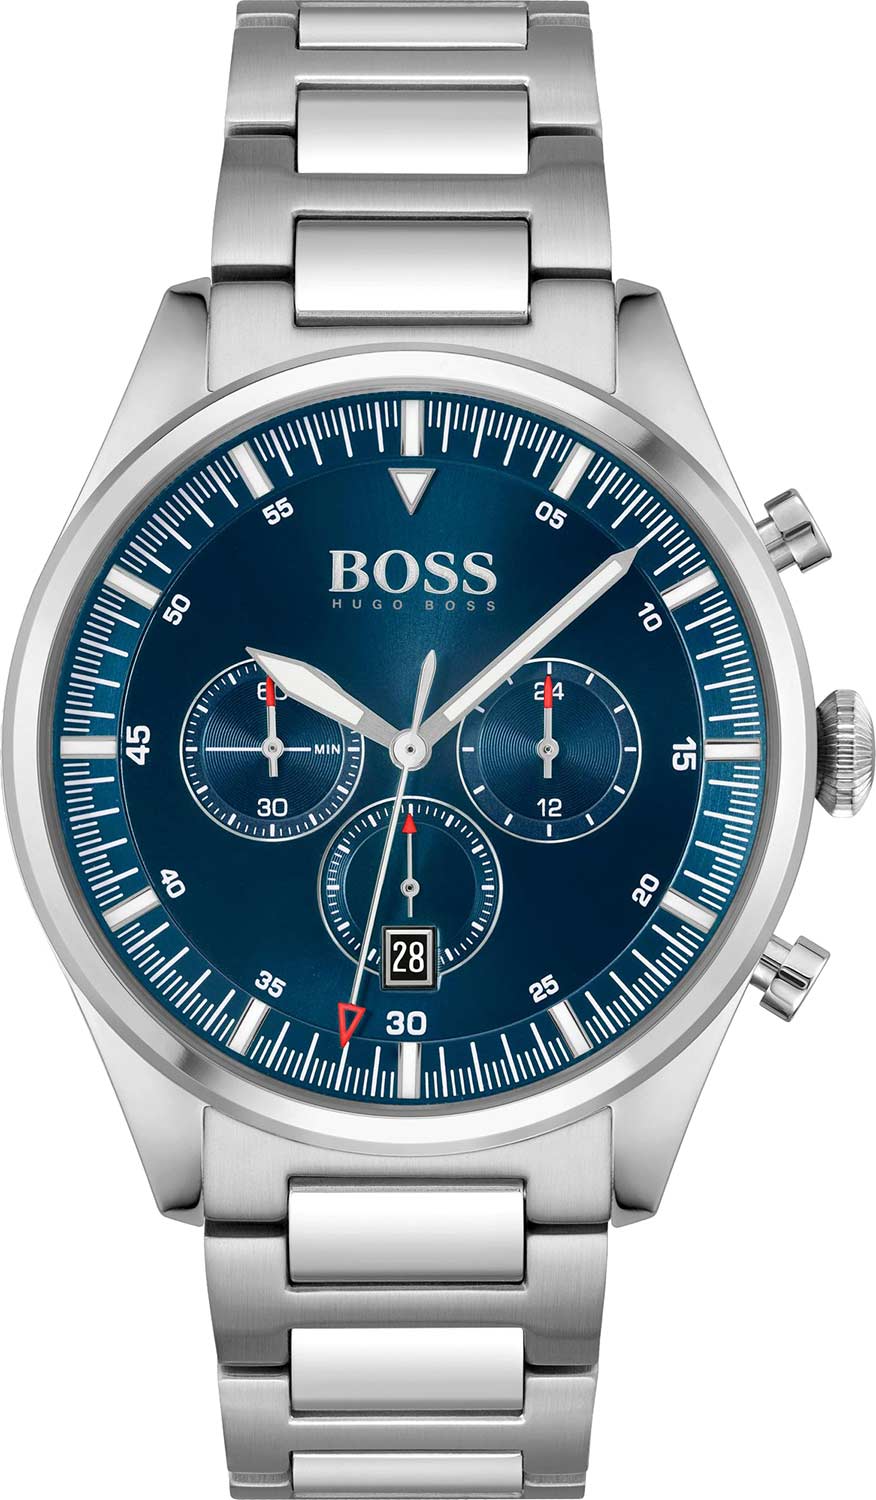   Hugo Boss HB1513867  